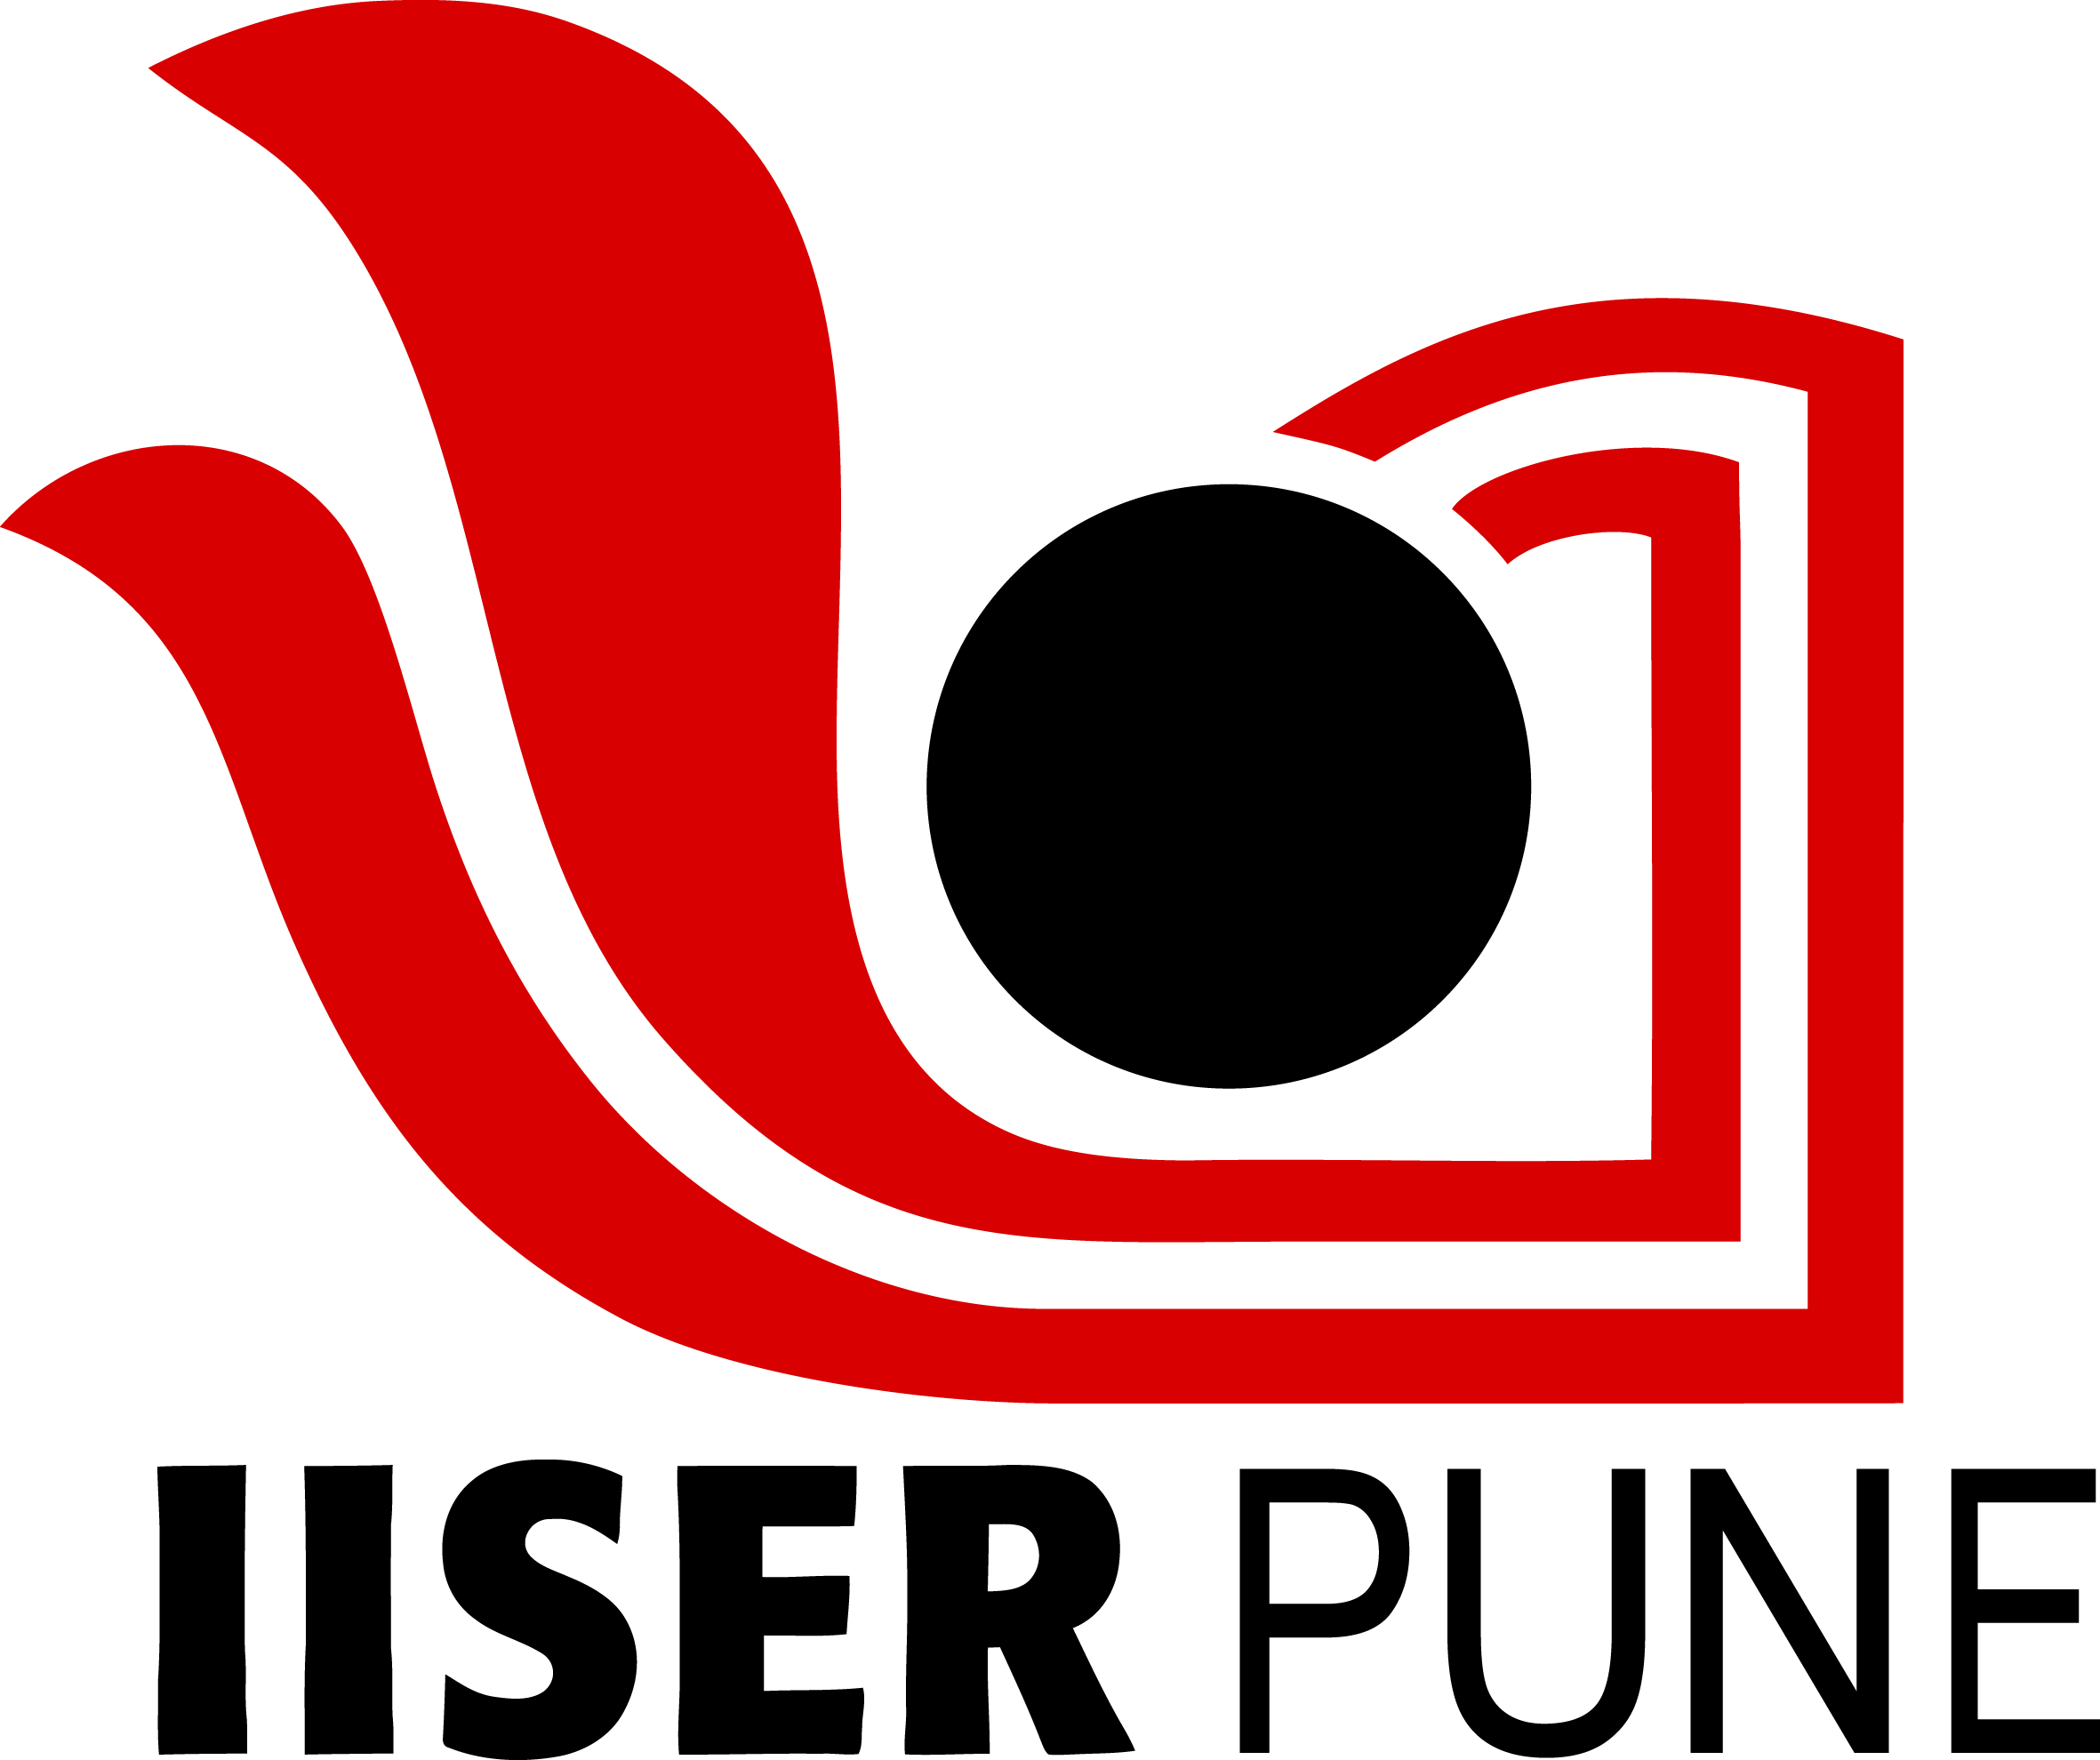 IISER PUNE IISER logo.png